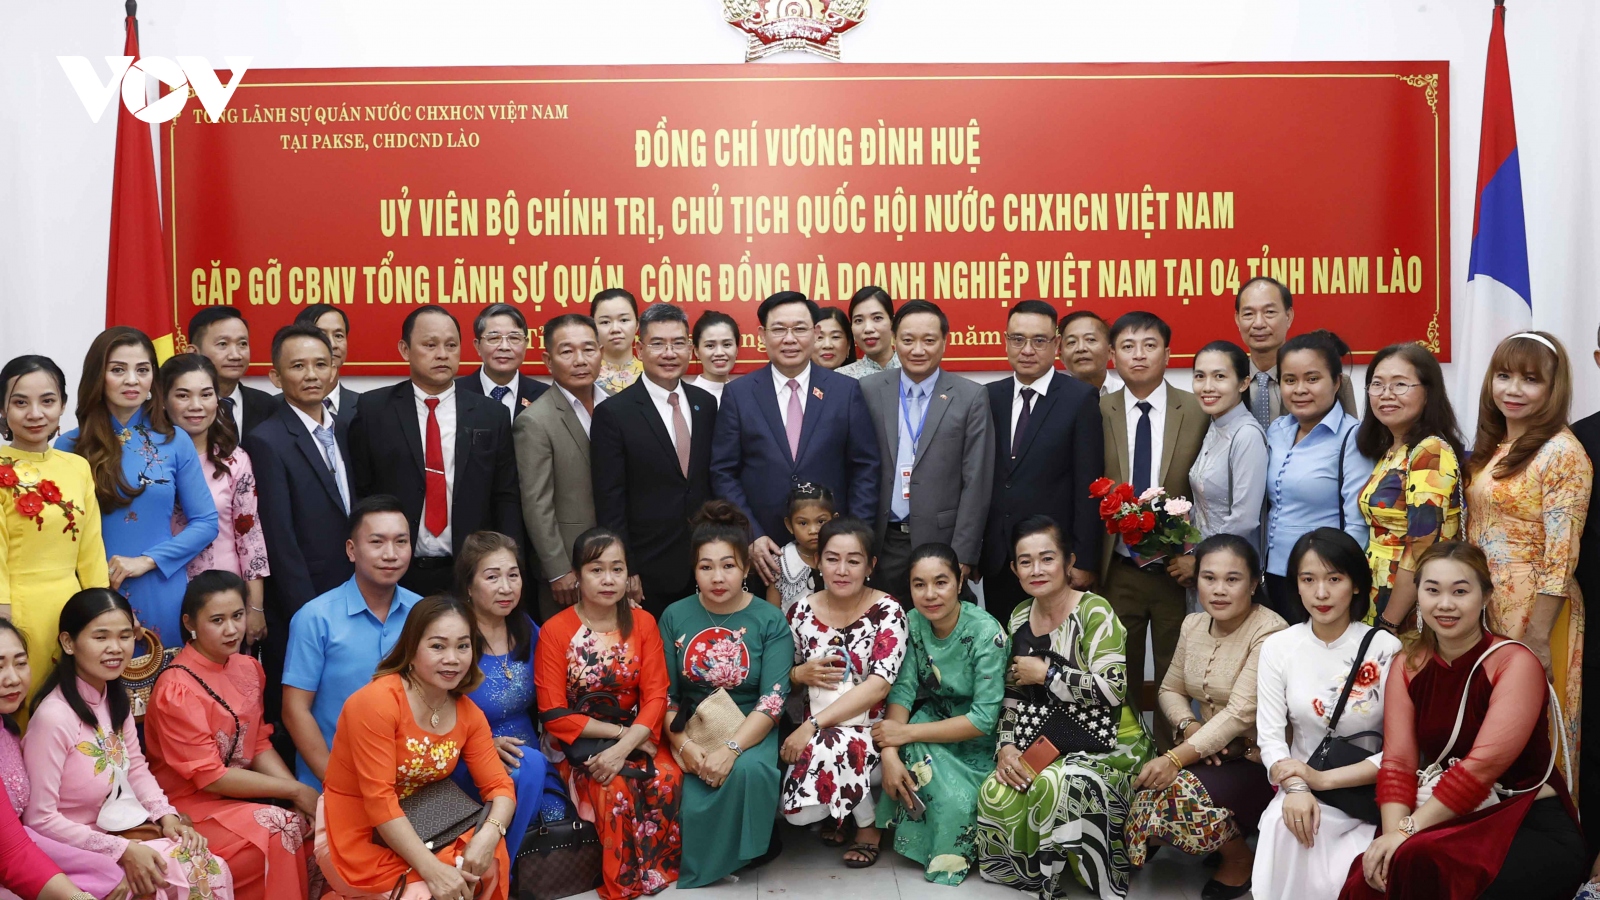 Chủ tịch Quốc hội gặp gỡ cộng đồng người Việt Nam tại 4 tỉnh Nam Lào